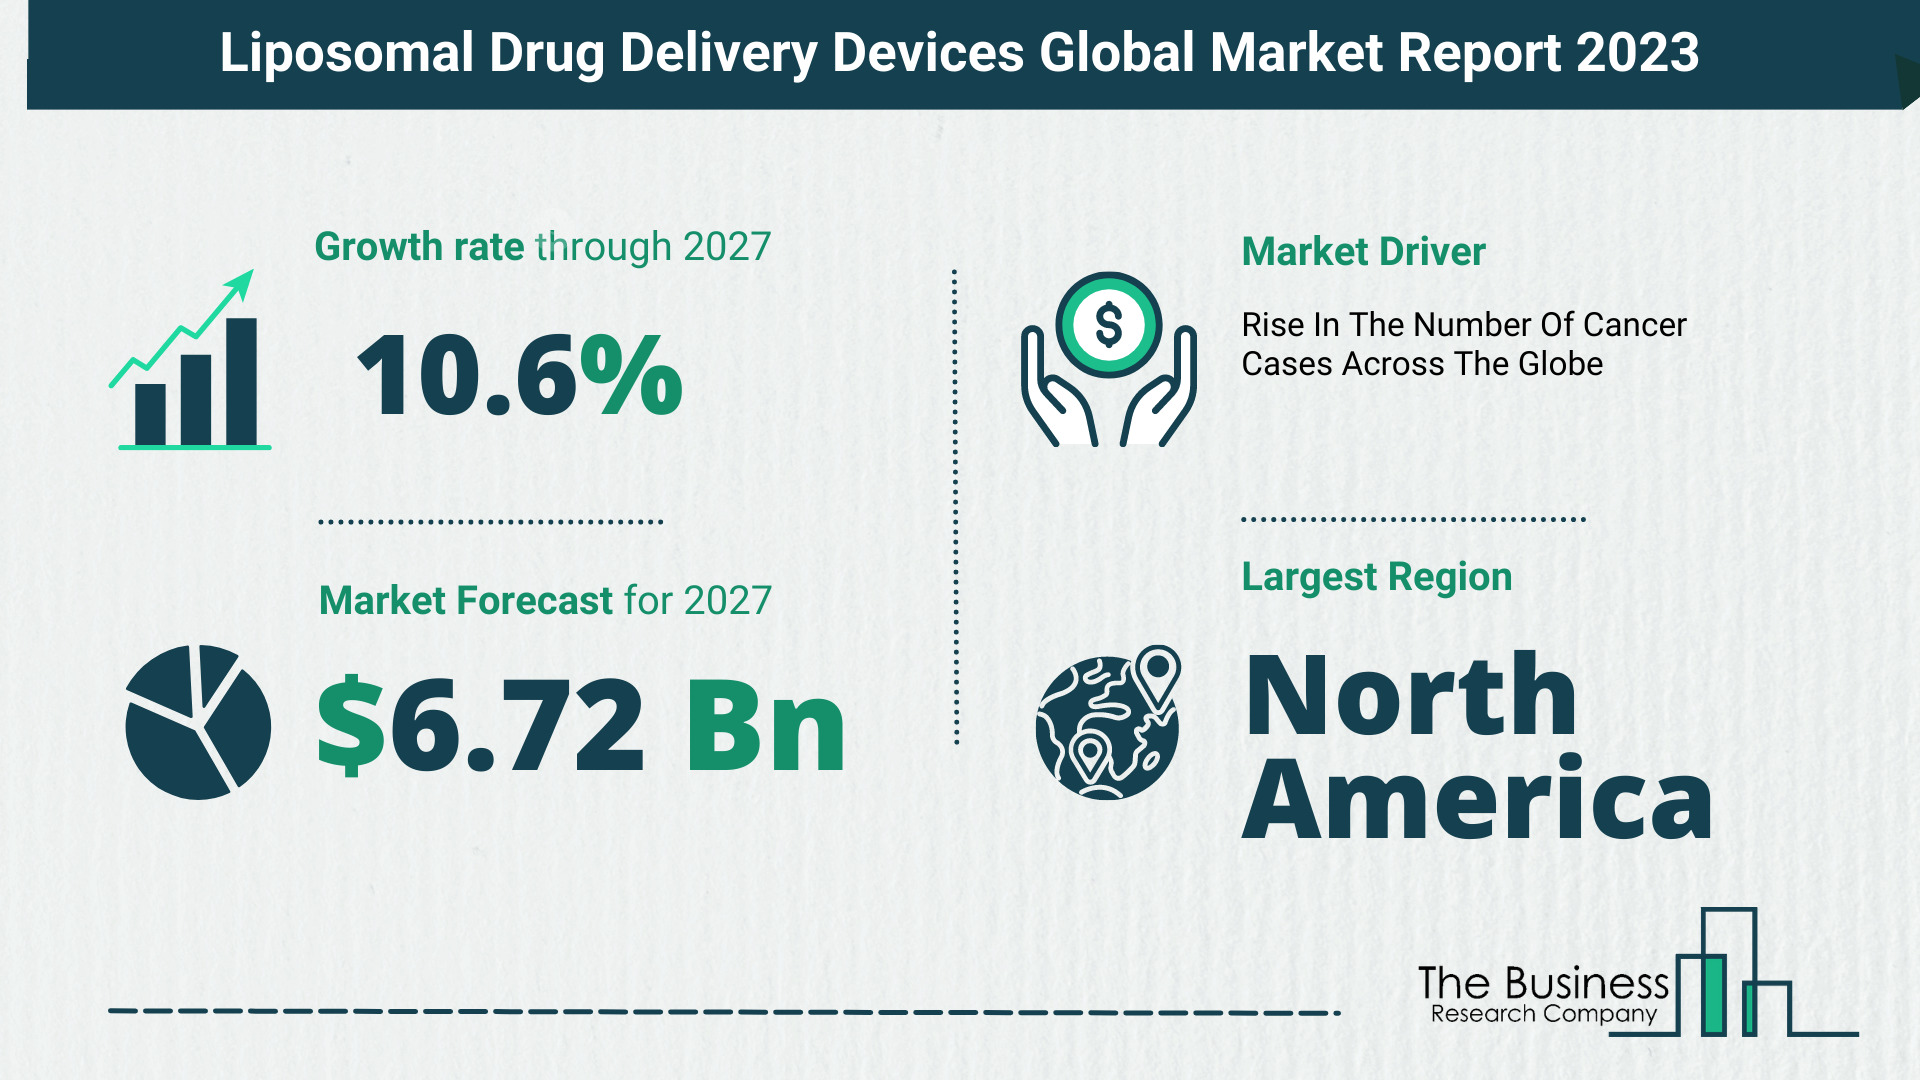 Global Liposomal Drug Delivery Devices Market